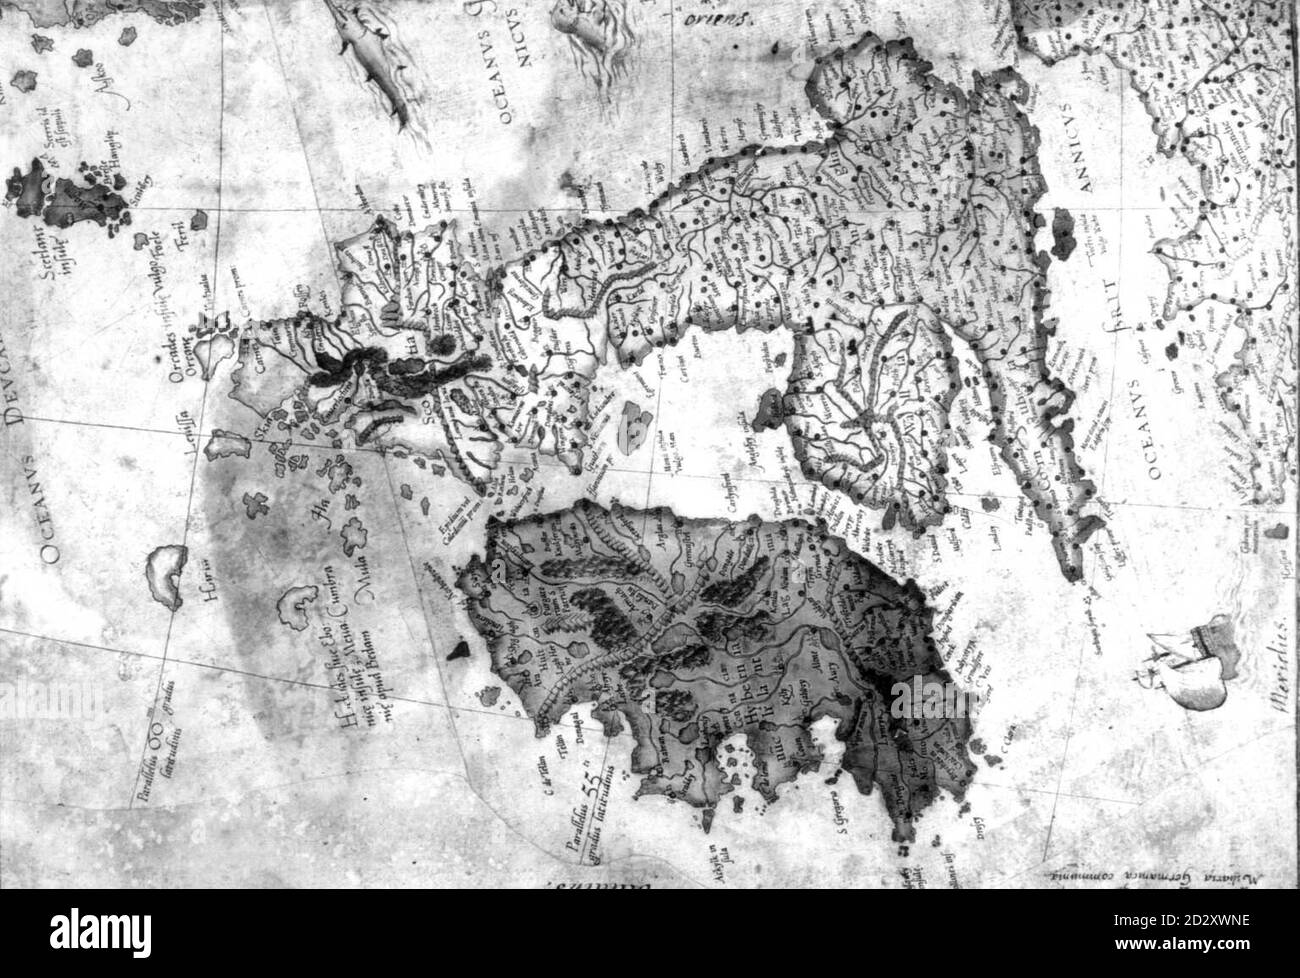 La dernière acquisition de la Britsh Library dans sa collection cartographique mondialement célèbre, l'Atlas du Hercator de l'Europe, datant du XVIe siècle. Il aurait été créé par Gerard Mercator (151201594), l'inventeur de l'atlas du monde et sans doute le plus grand cartographe des temps modernes. Voir PA Story ARTS Map. Image PA. Banque D'Images